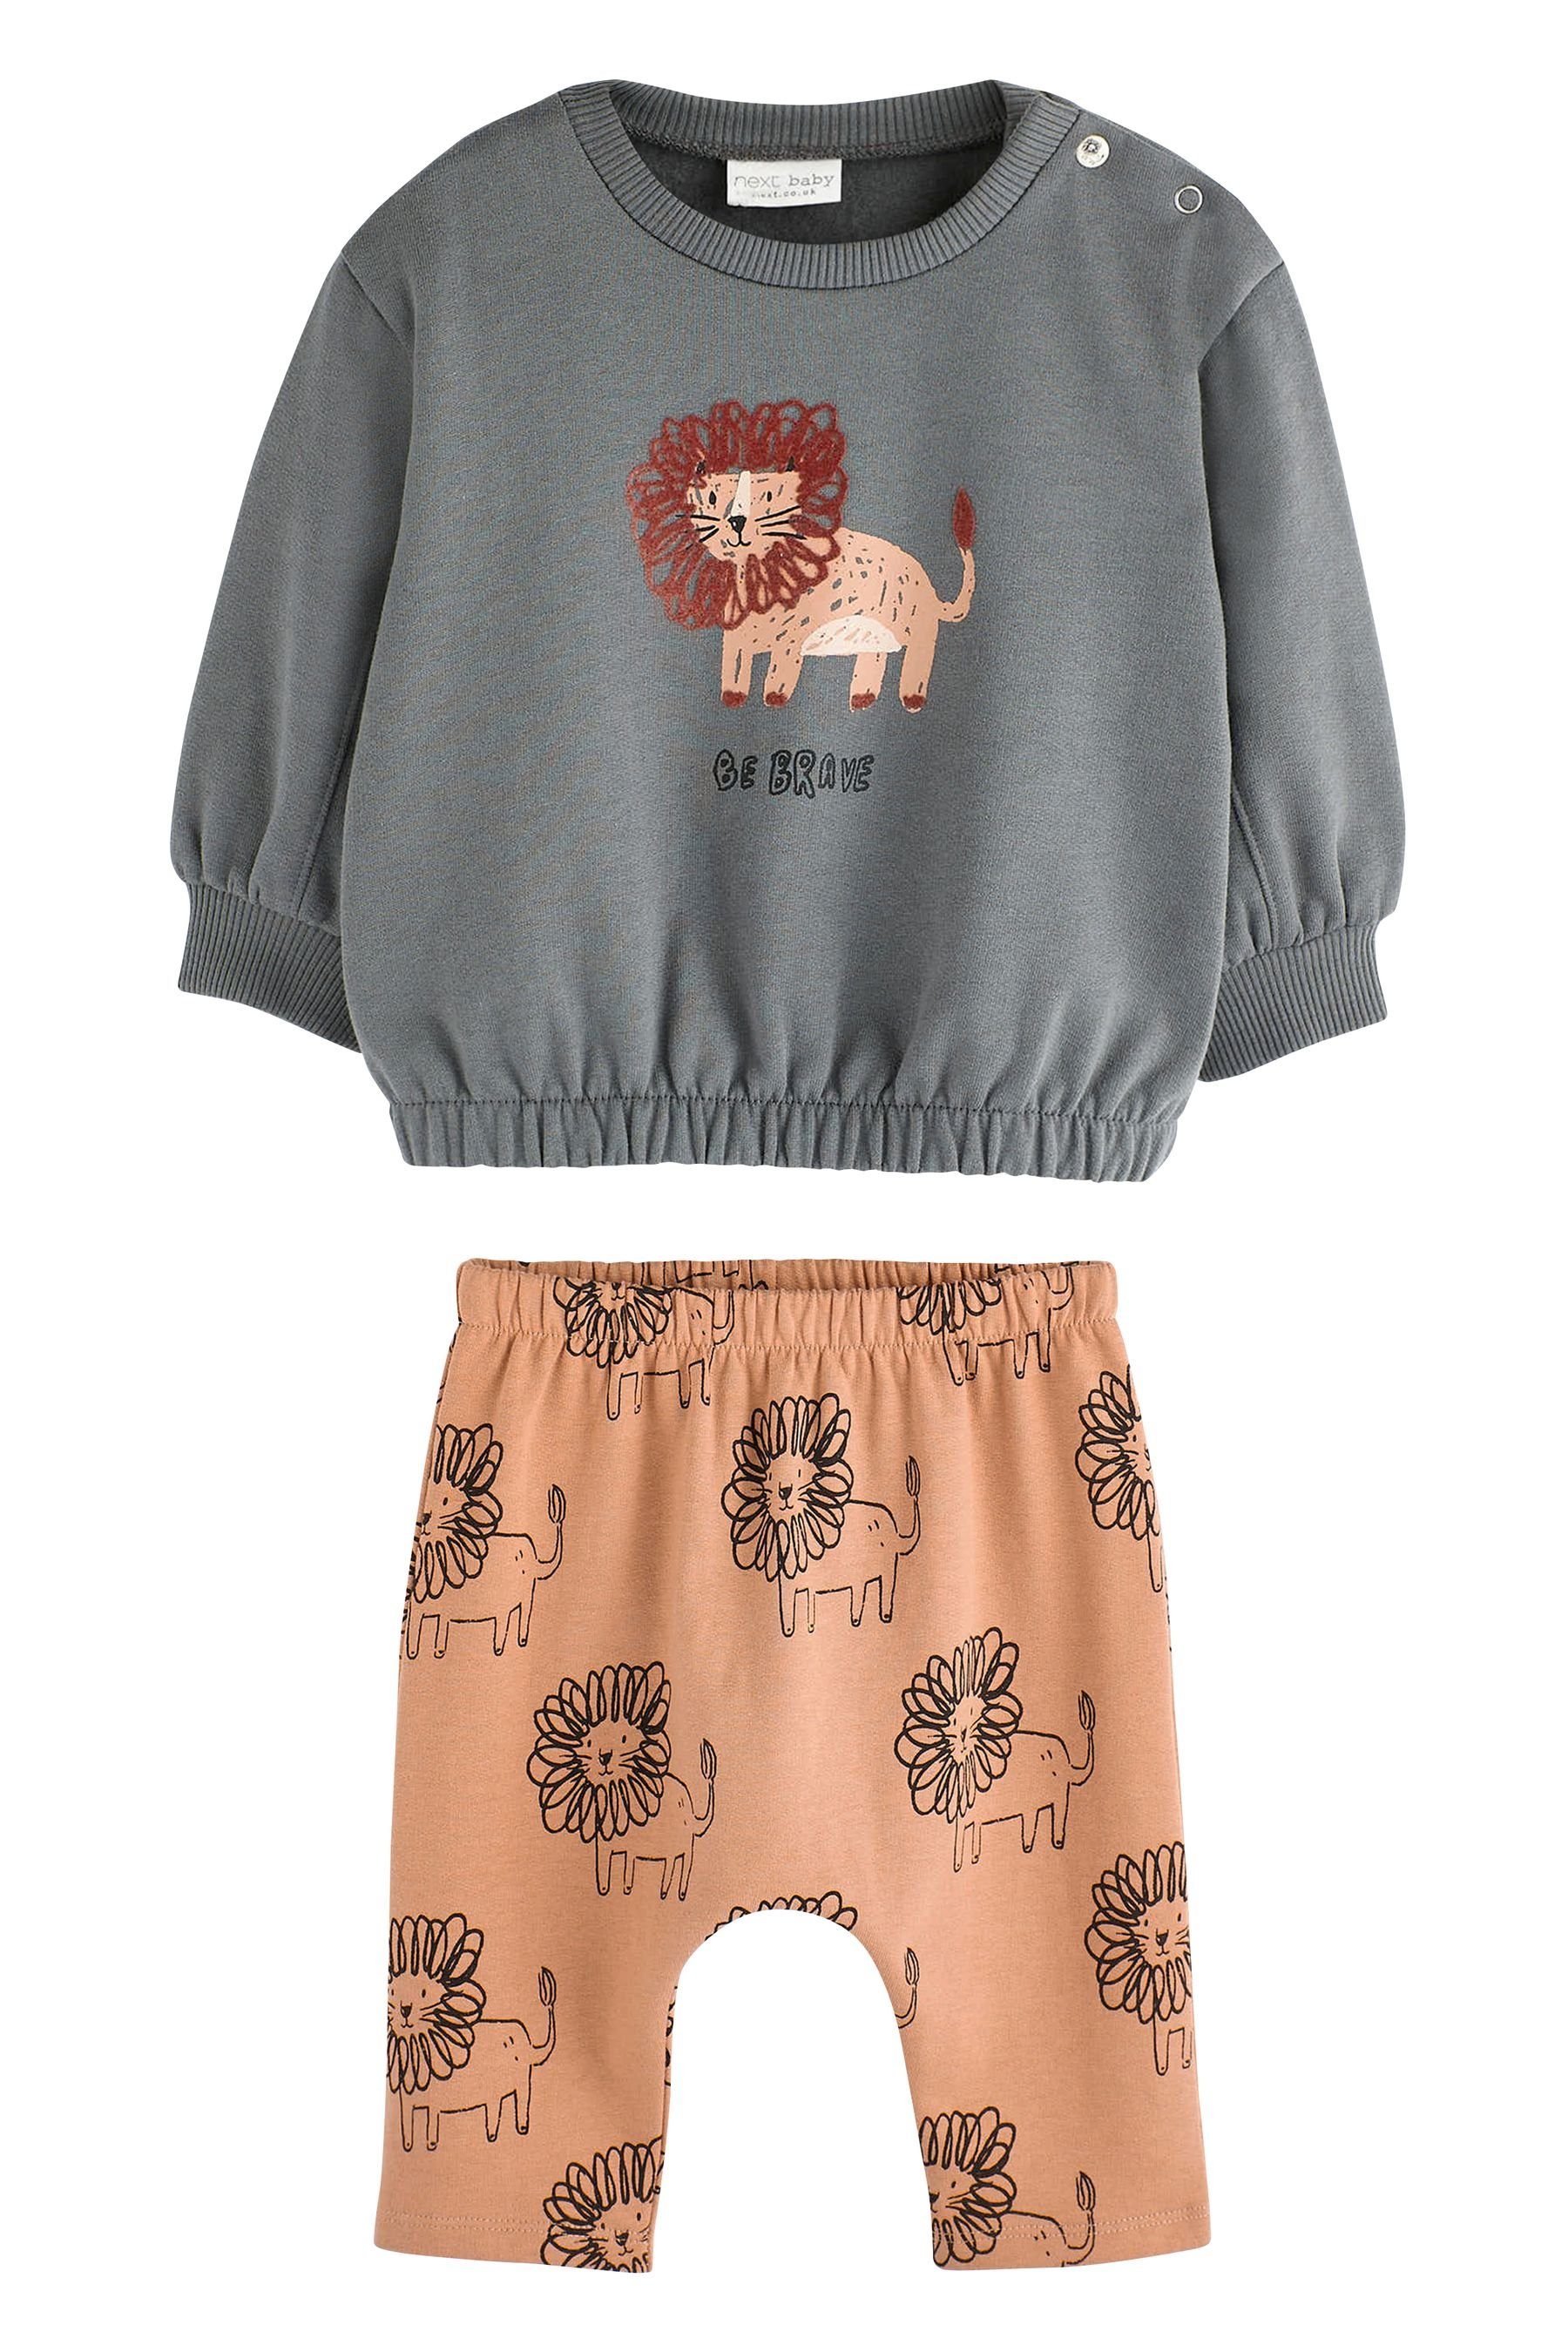 Next Sweatanzug 2-teiliges Baby-Set mit Sweatshirt und Jogginghose (2-tlg) Charcoal Grey/Rust Brown Lion